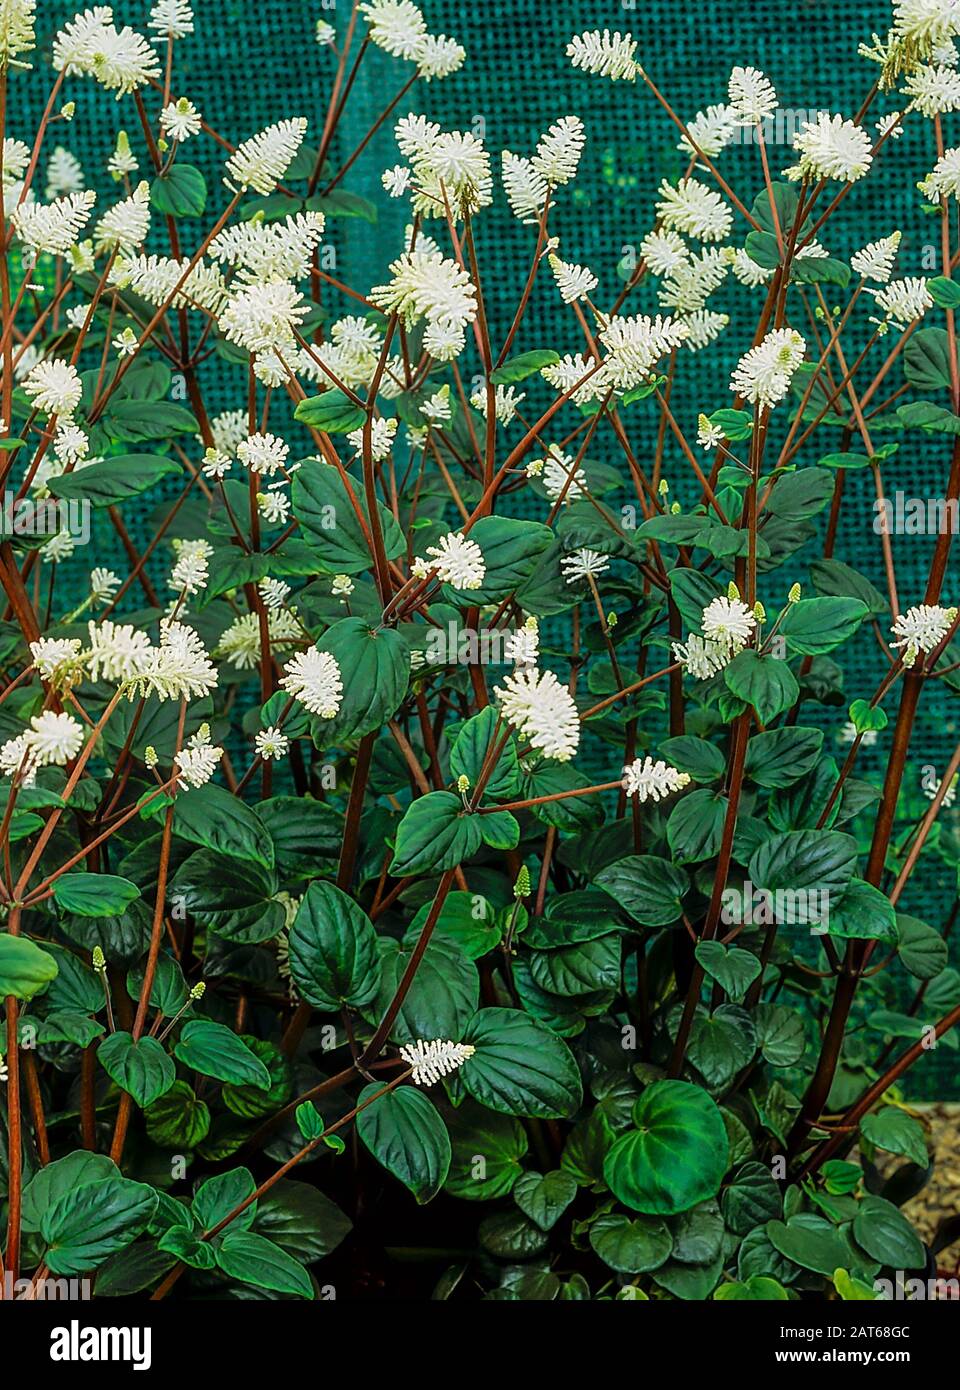 Peperomia resediflora oder Peperomia fraseri ist eine schattenliebende Pflanze, die Stacheln weißer Blumen aufweist. Es ist immergrün, sommerlich blühend und frostweich. Stockfoto